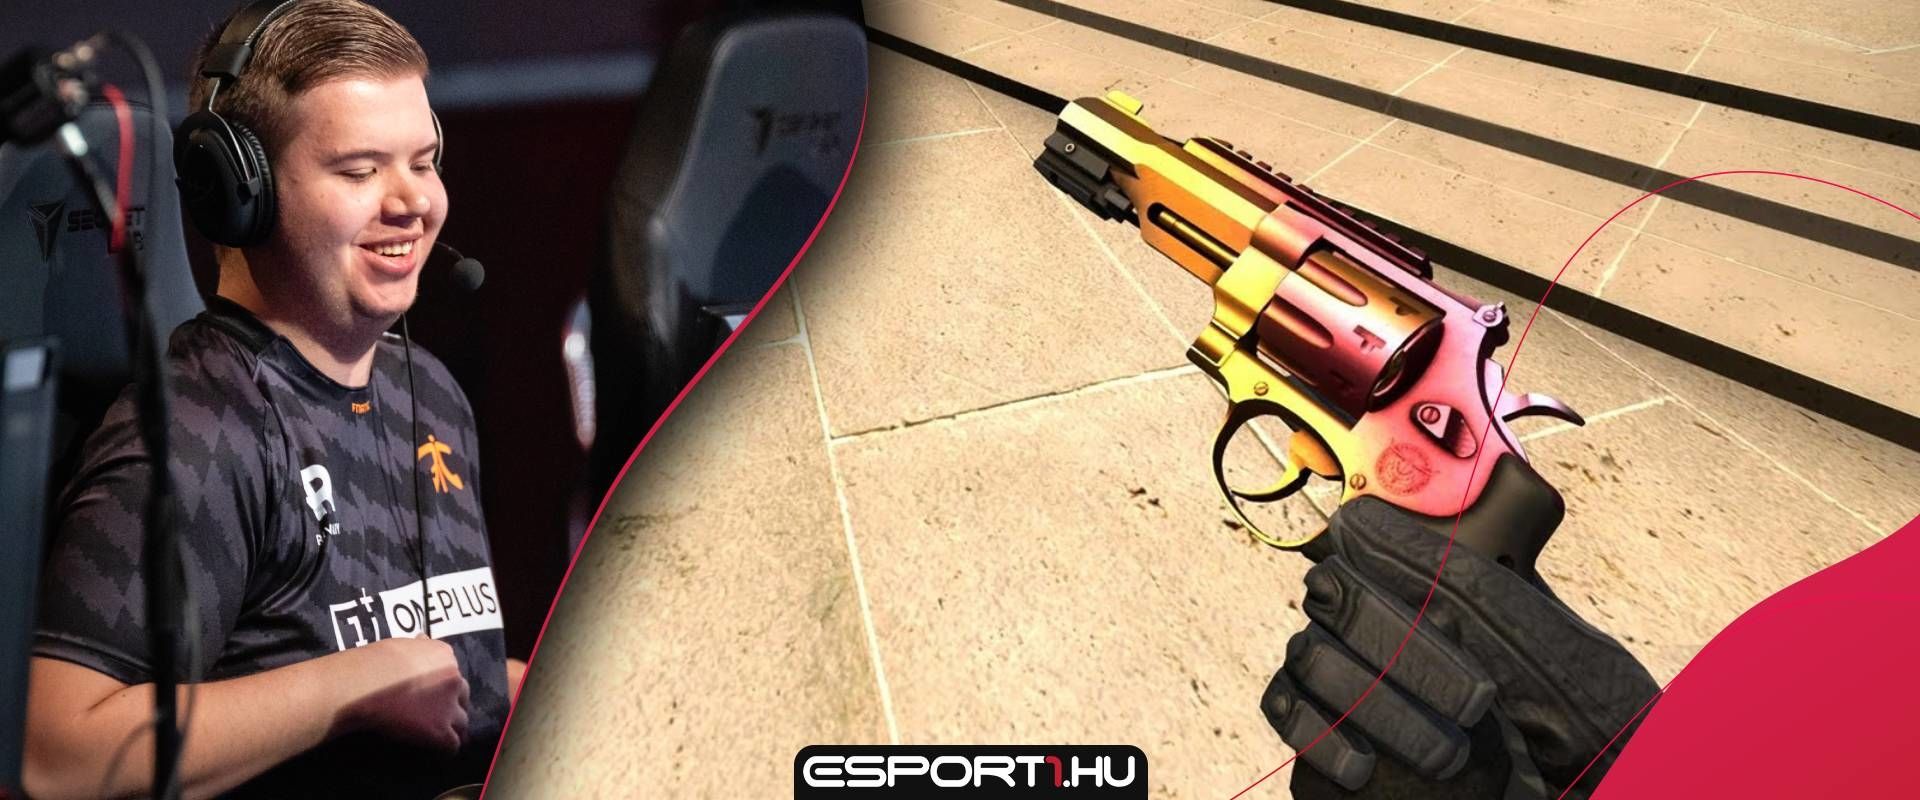 R8 Revolver vs Desert Eagle - Metát teremt a fnatic?